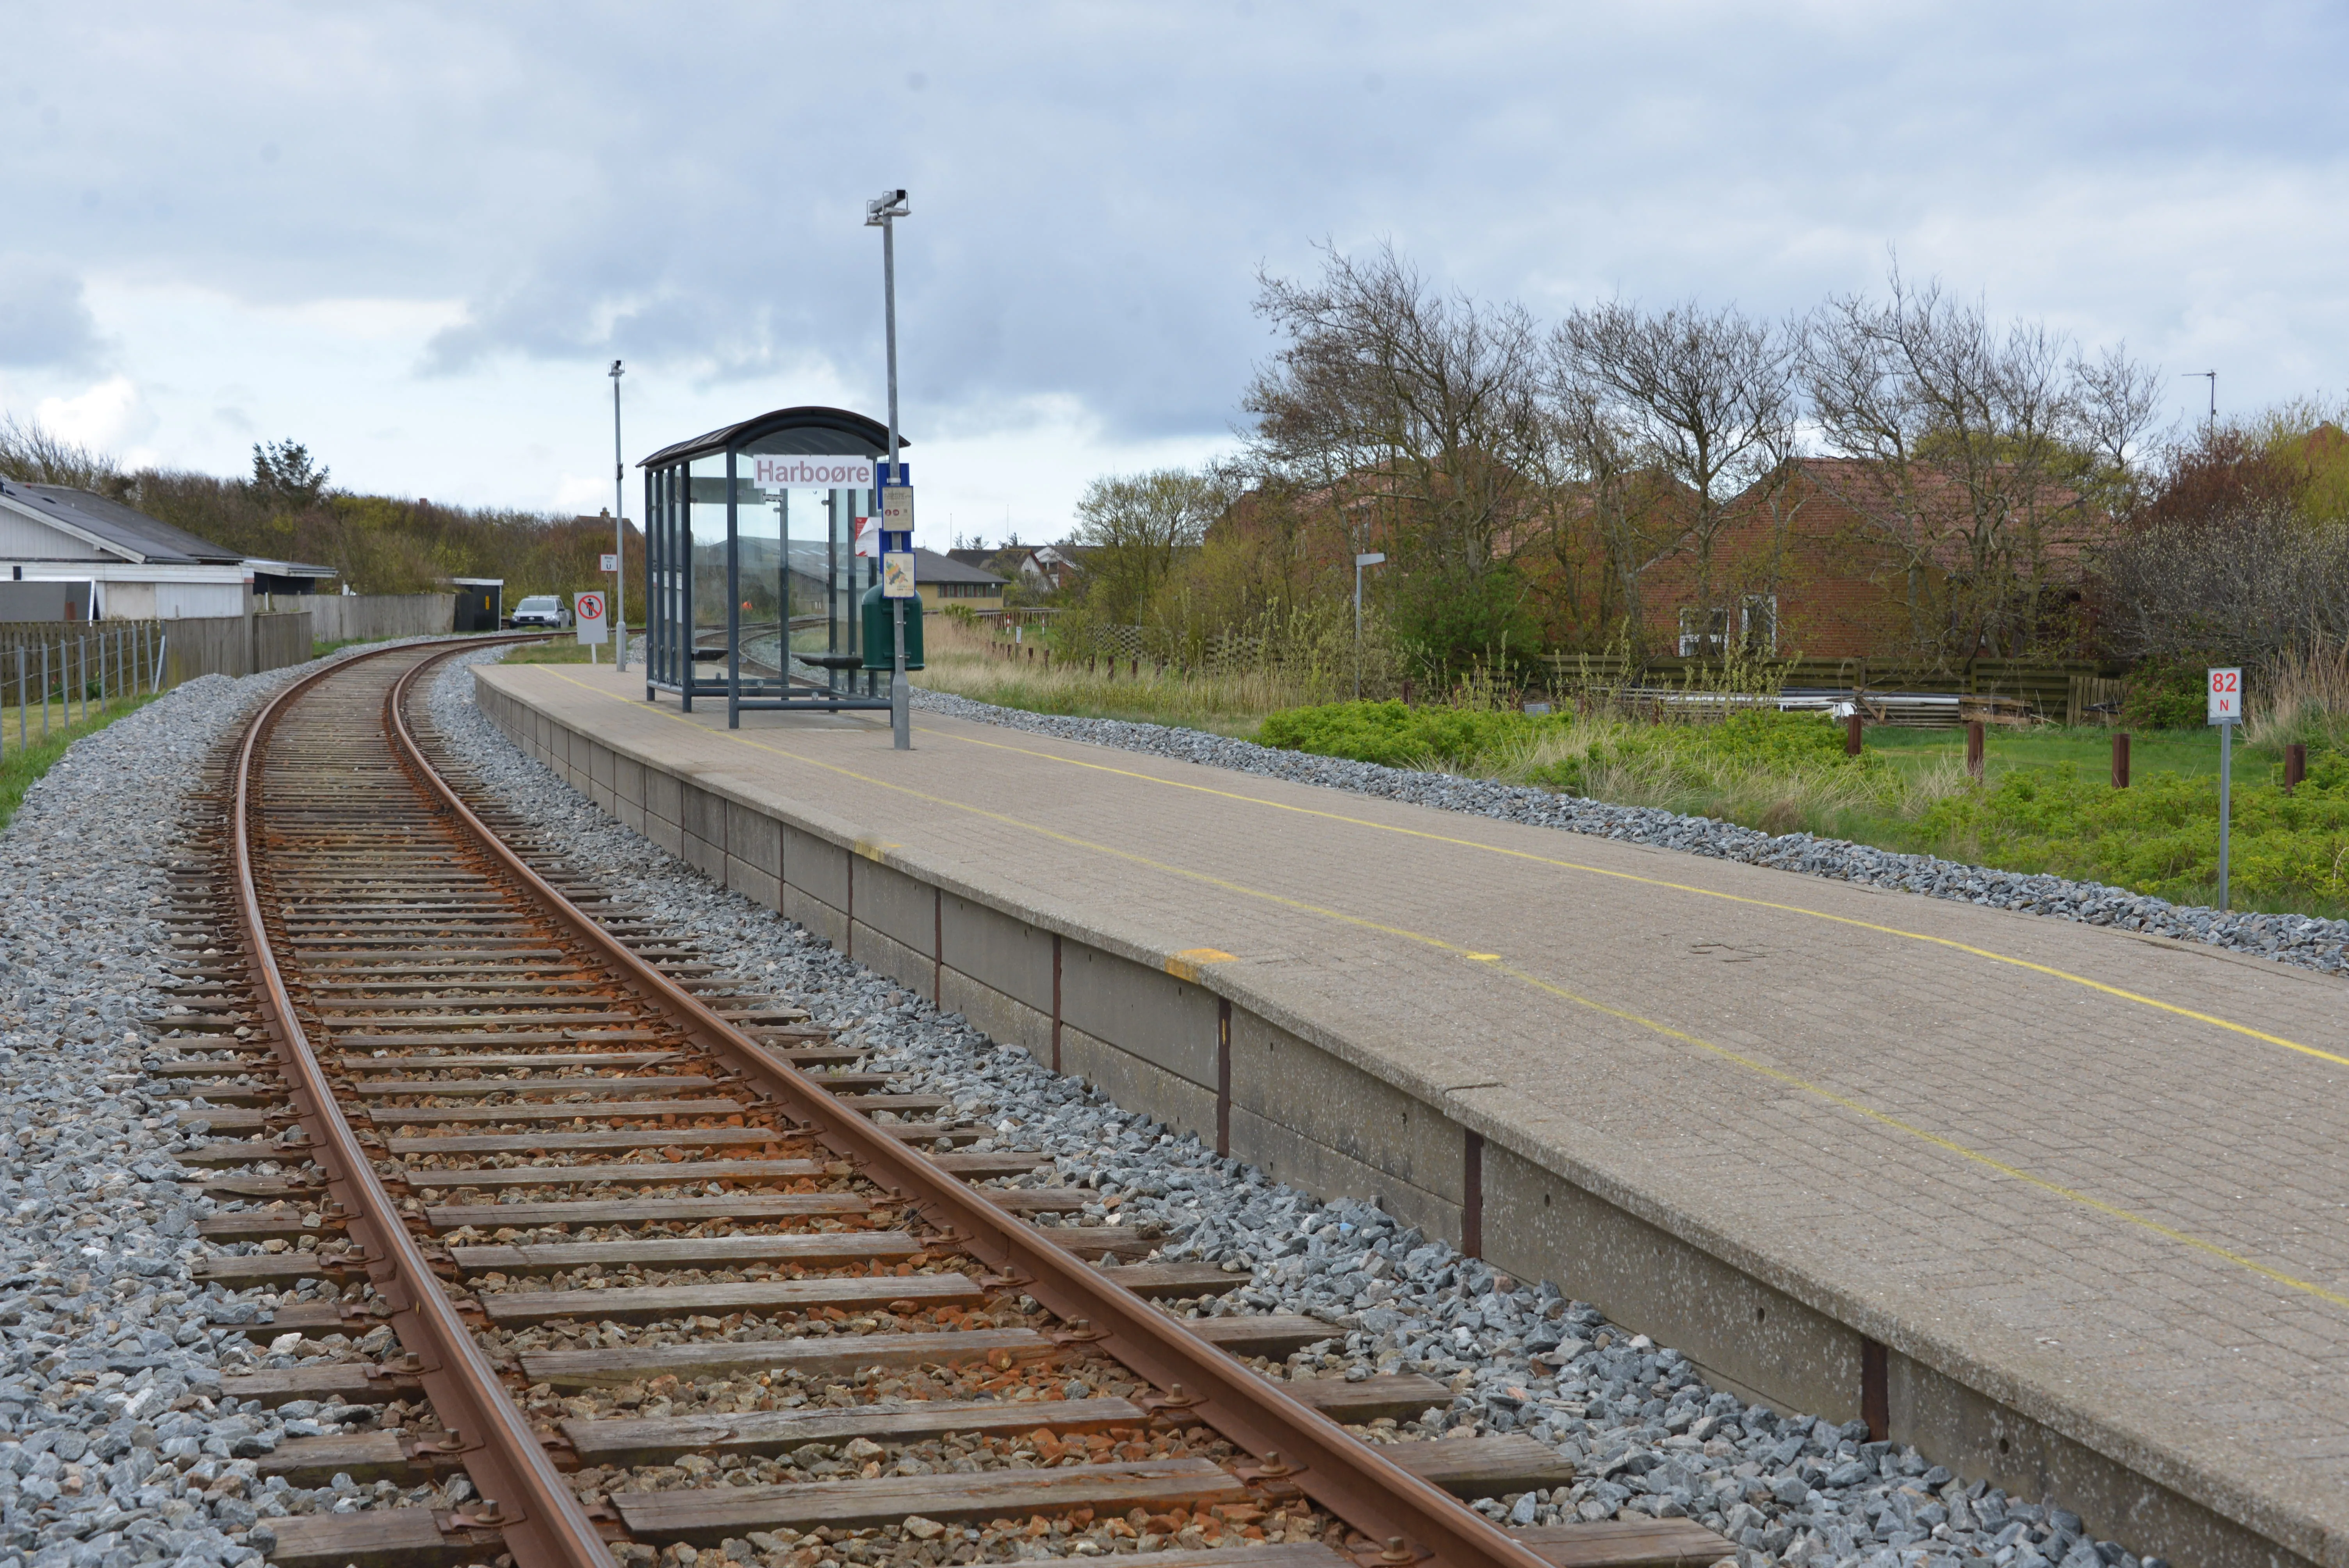 Billede af Harboøre Station.